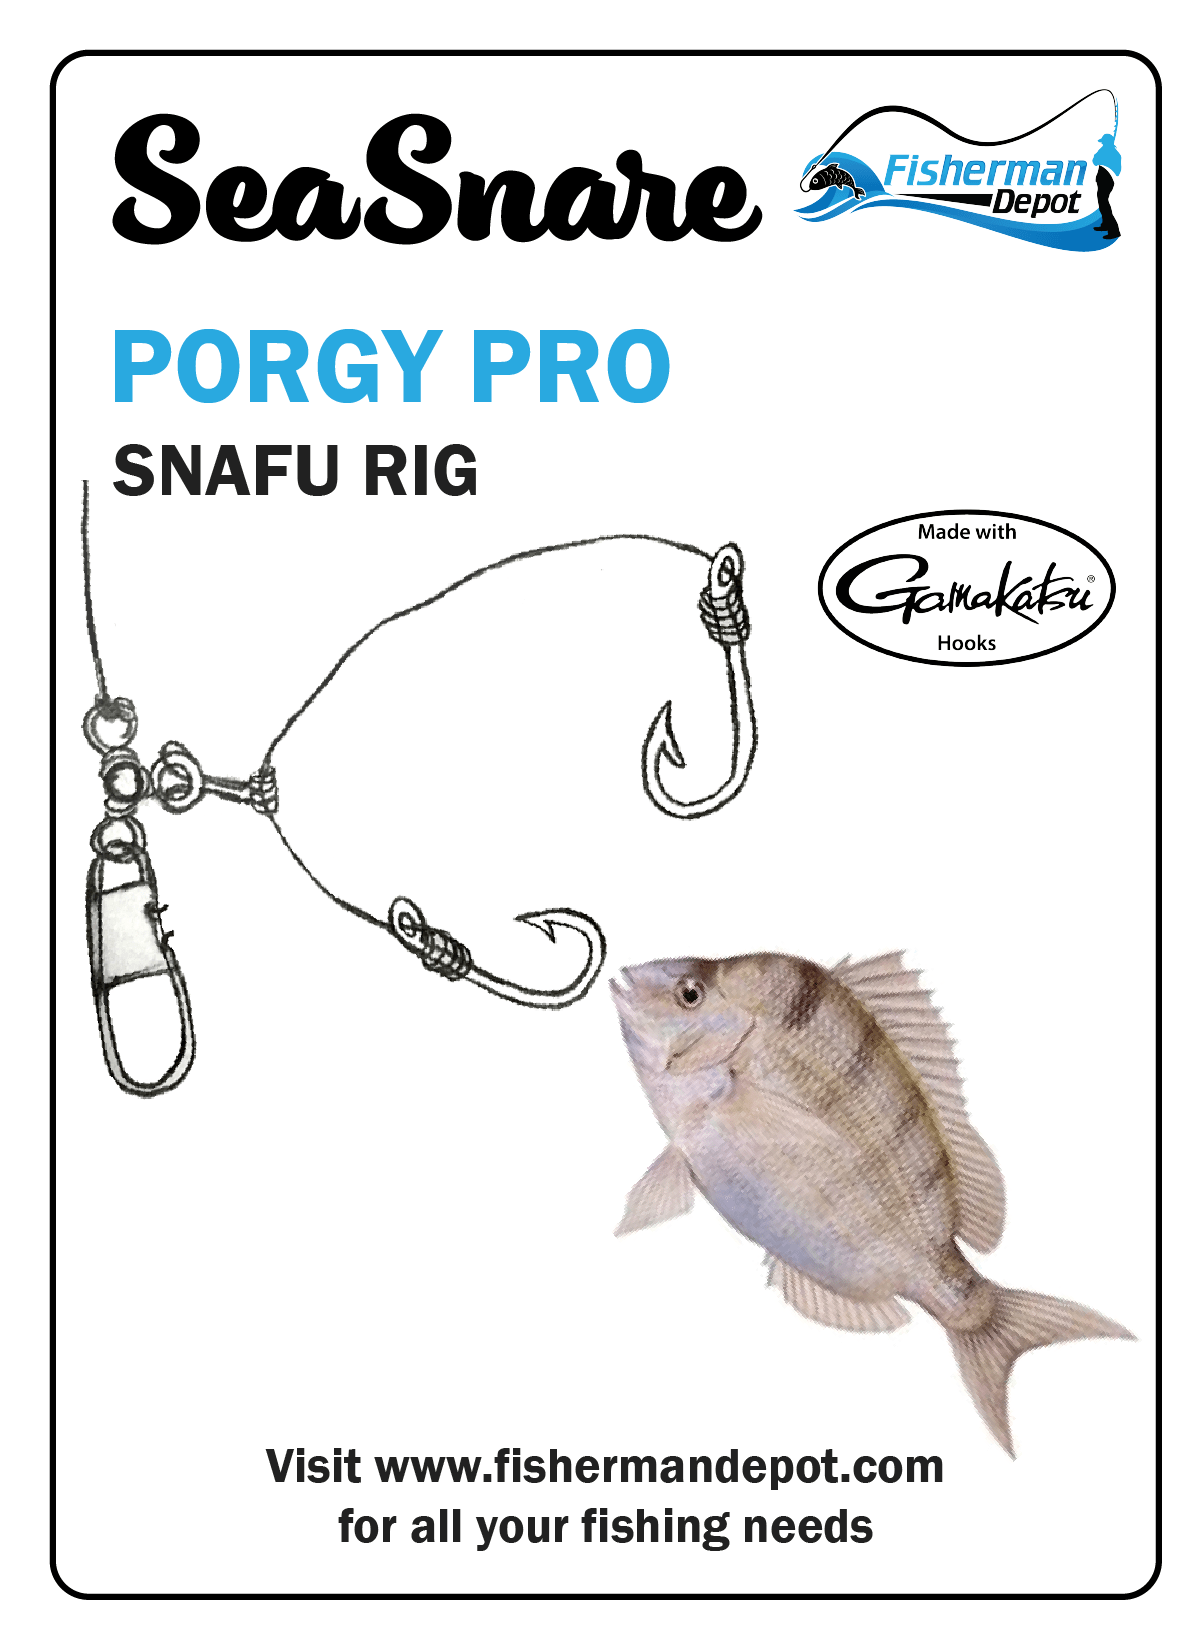 SeaSnare - Porgy Pro Snafu Rig 3/Pack / Gamakatsu / 2/0 Hook